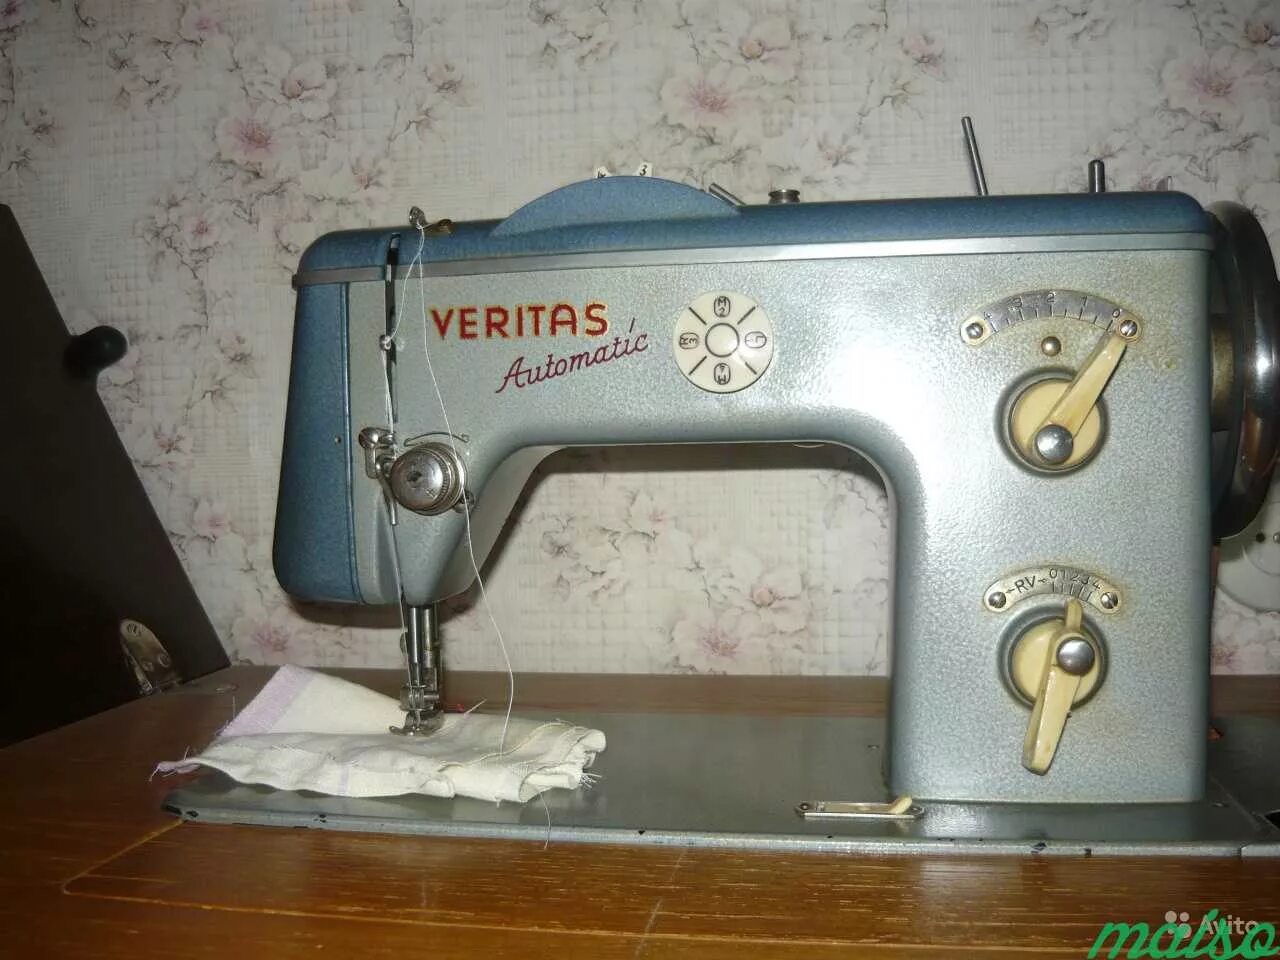 Швейная машинка Веритас зигзаг. Швейная машинка Веритас ножная. Машинка швейная Веритас с педальным приводом. Швейная ножная зигзаг машина Веритас.